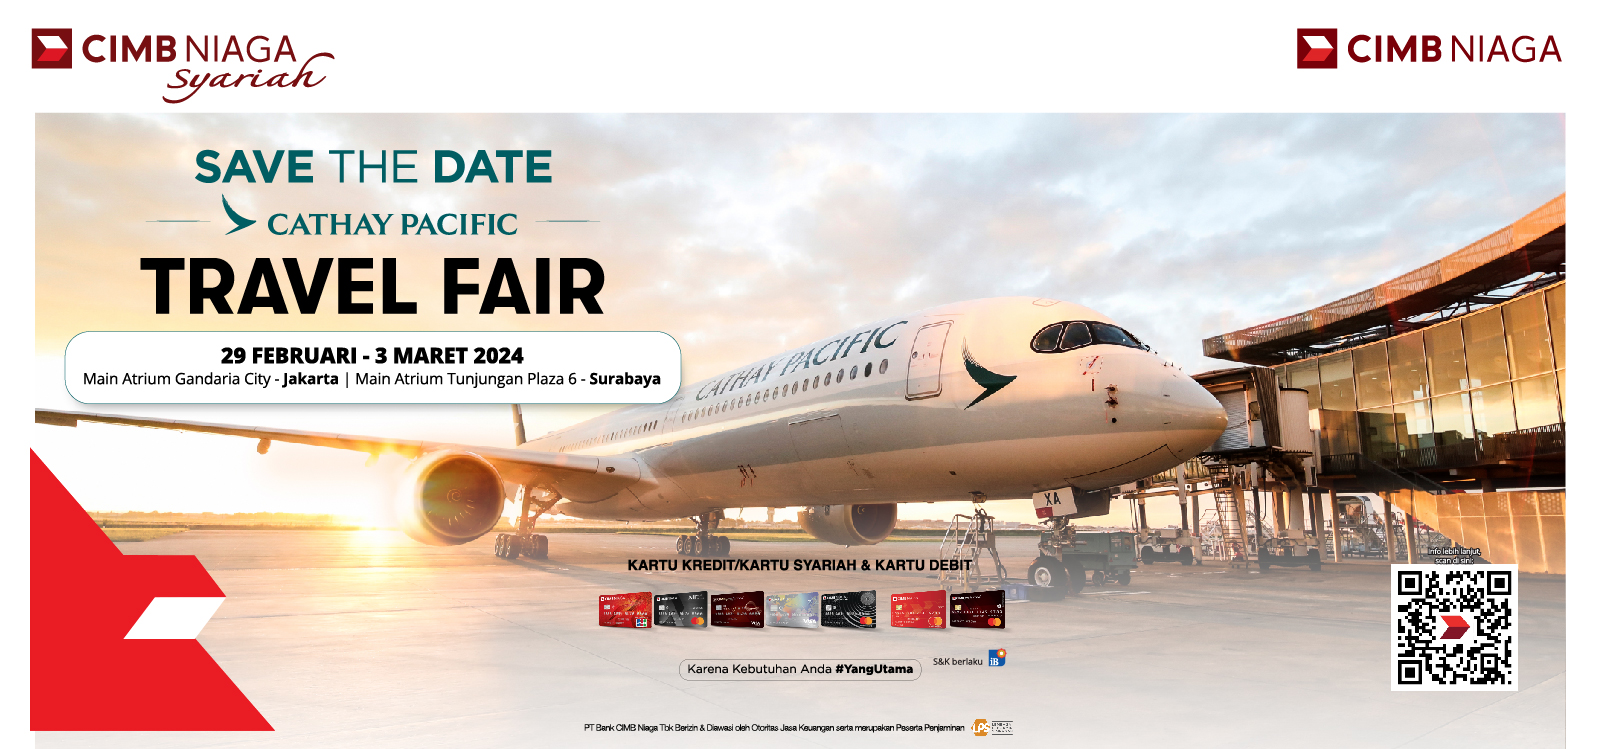 Cathay Pacific Travel Fair Feb 2024